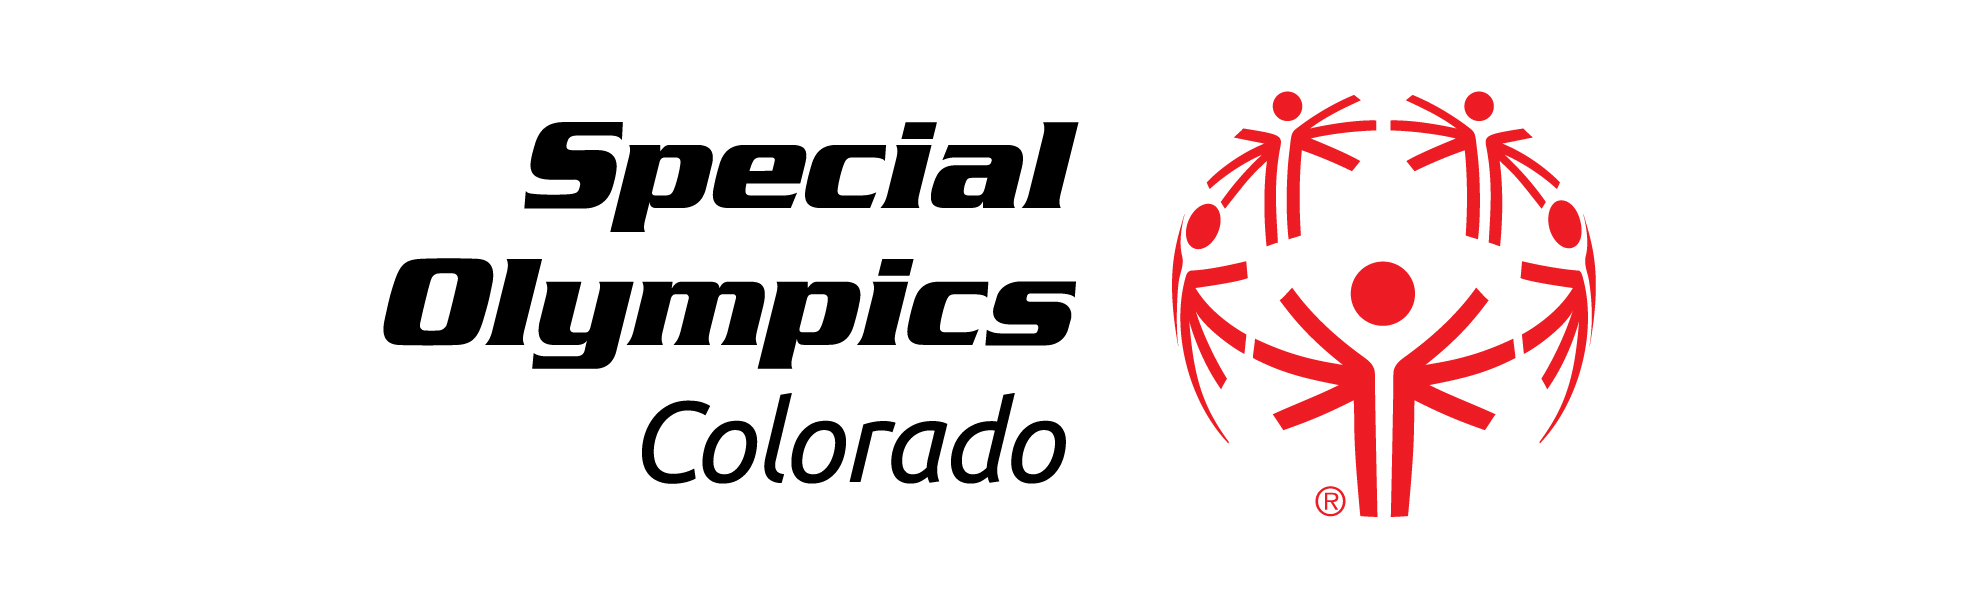 Special Olympics Colorado Colorado Hub